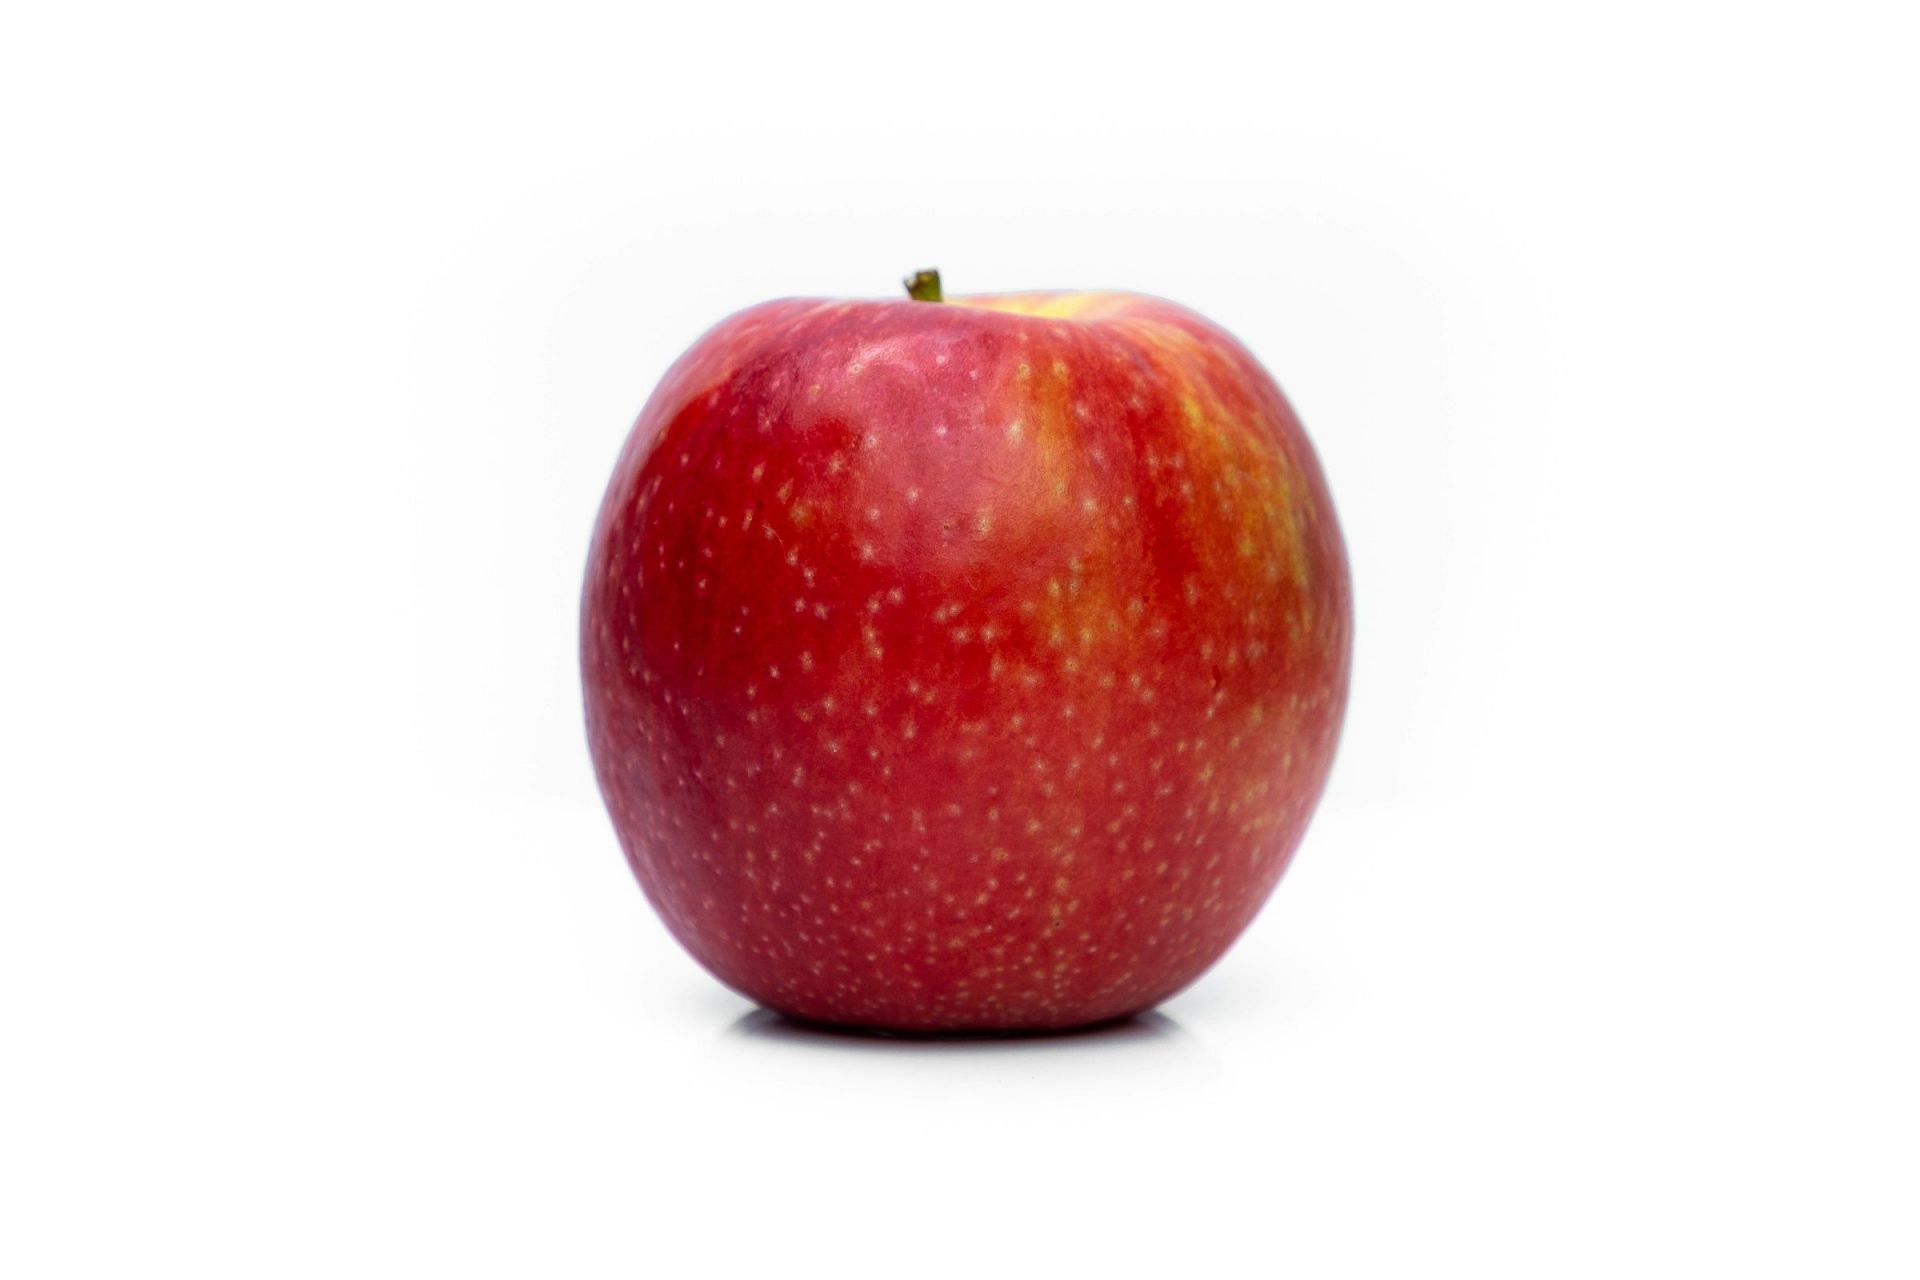 Apples (Image via Unsplash/Amit Lahav)